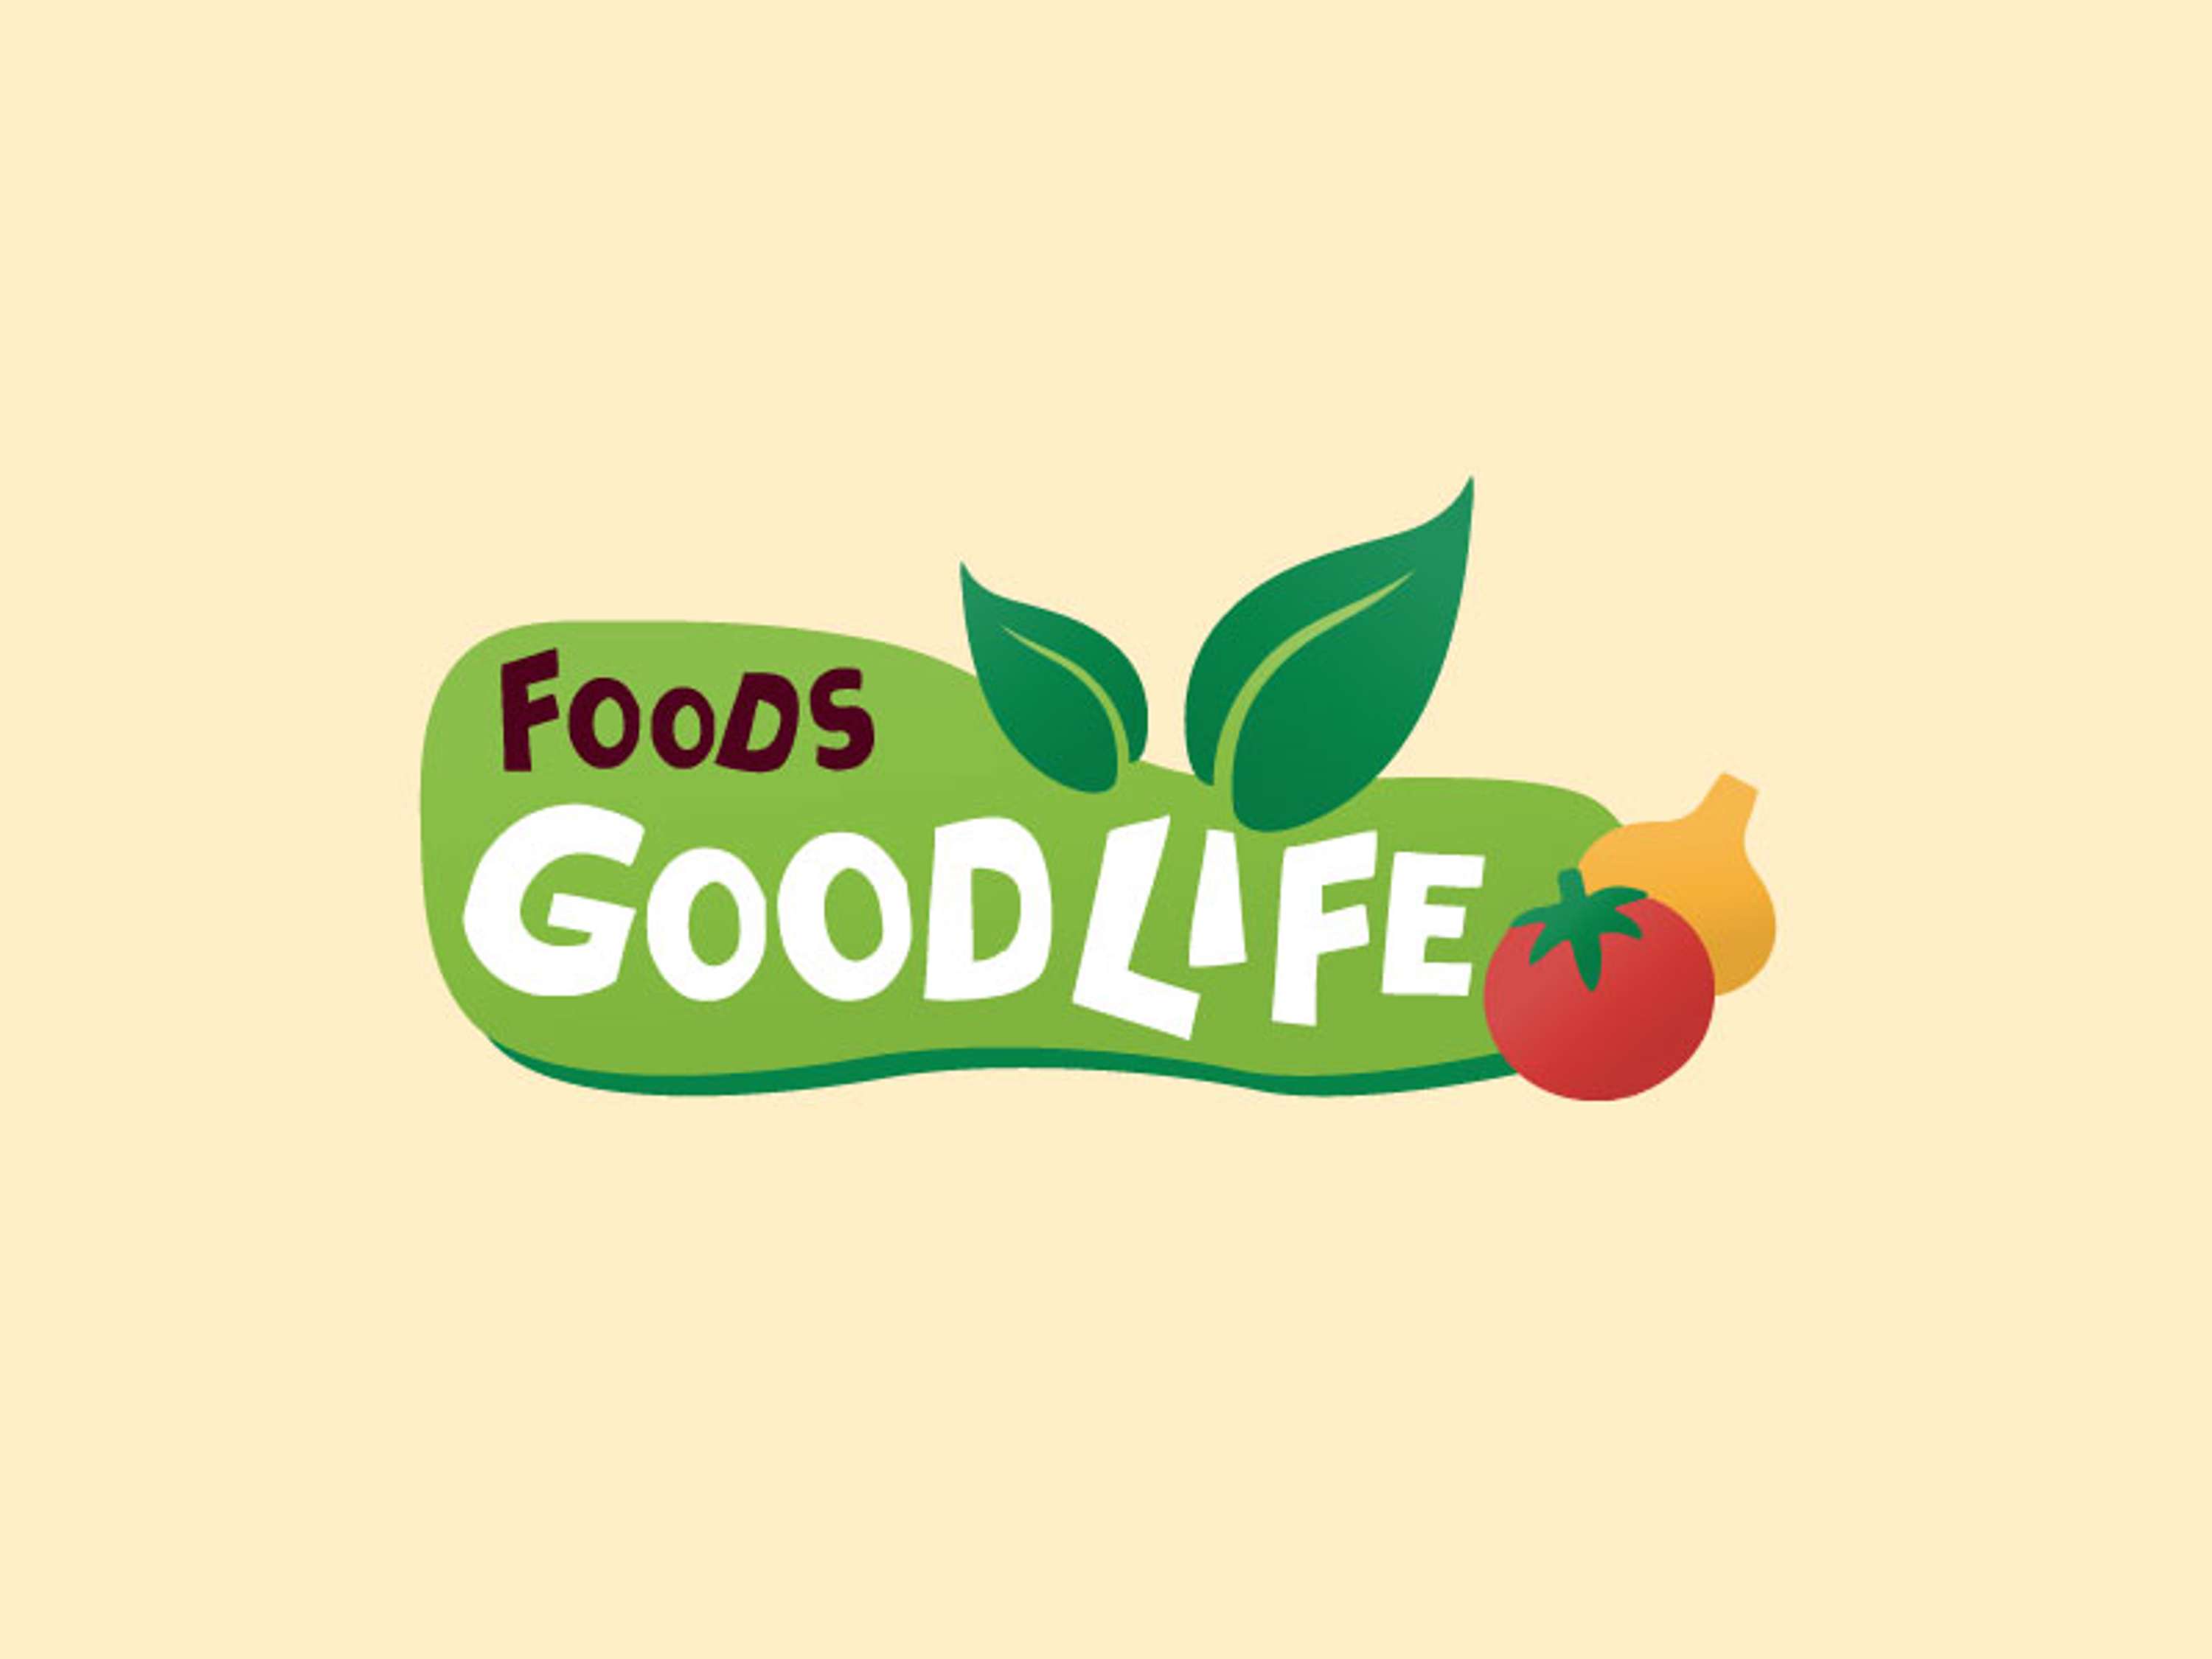 Топ фуд. Naturfoods логотип. Good food логотип. Well foods лого. The best foods лого.